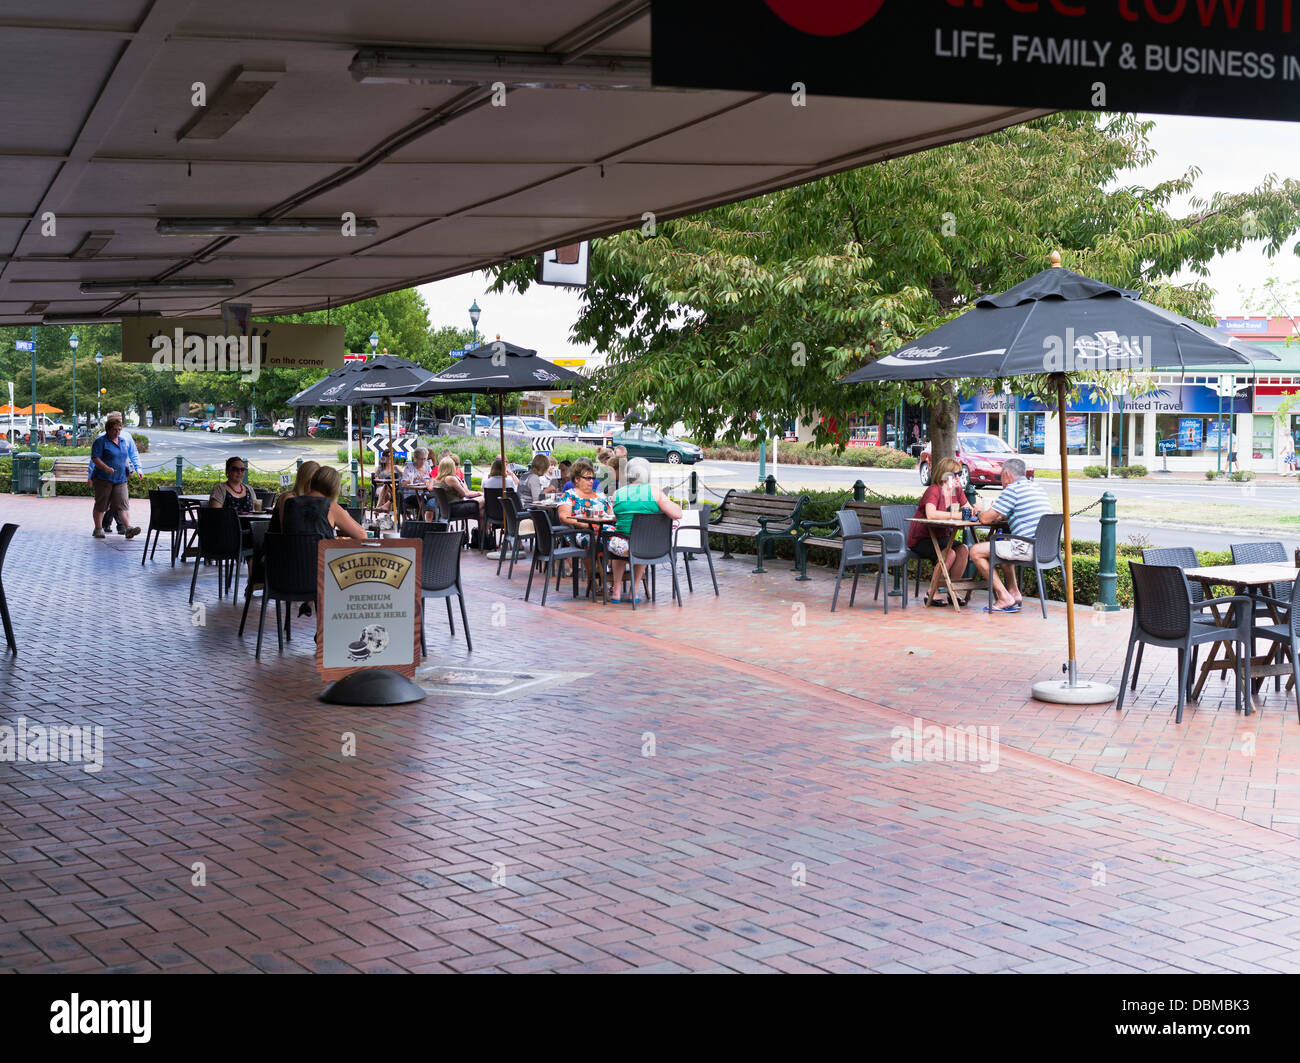 Dh CAMBRIDGE NUOVA ZELANDA Città pavement cafe alfresco di mangiare all'aperto Foto Stock